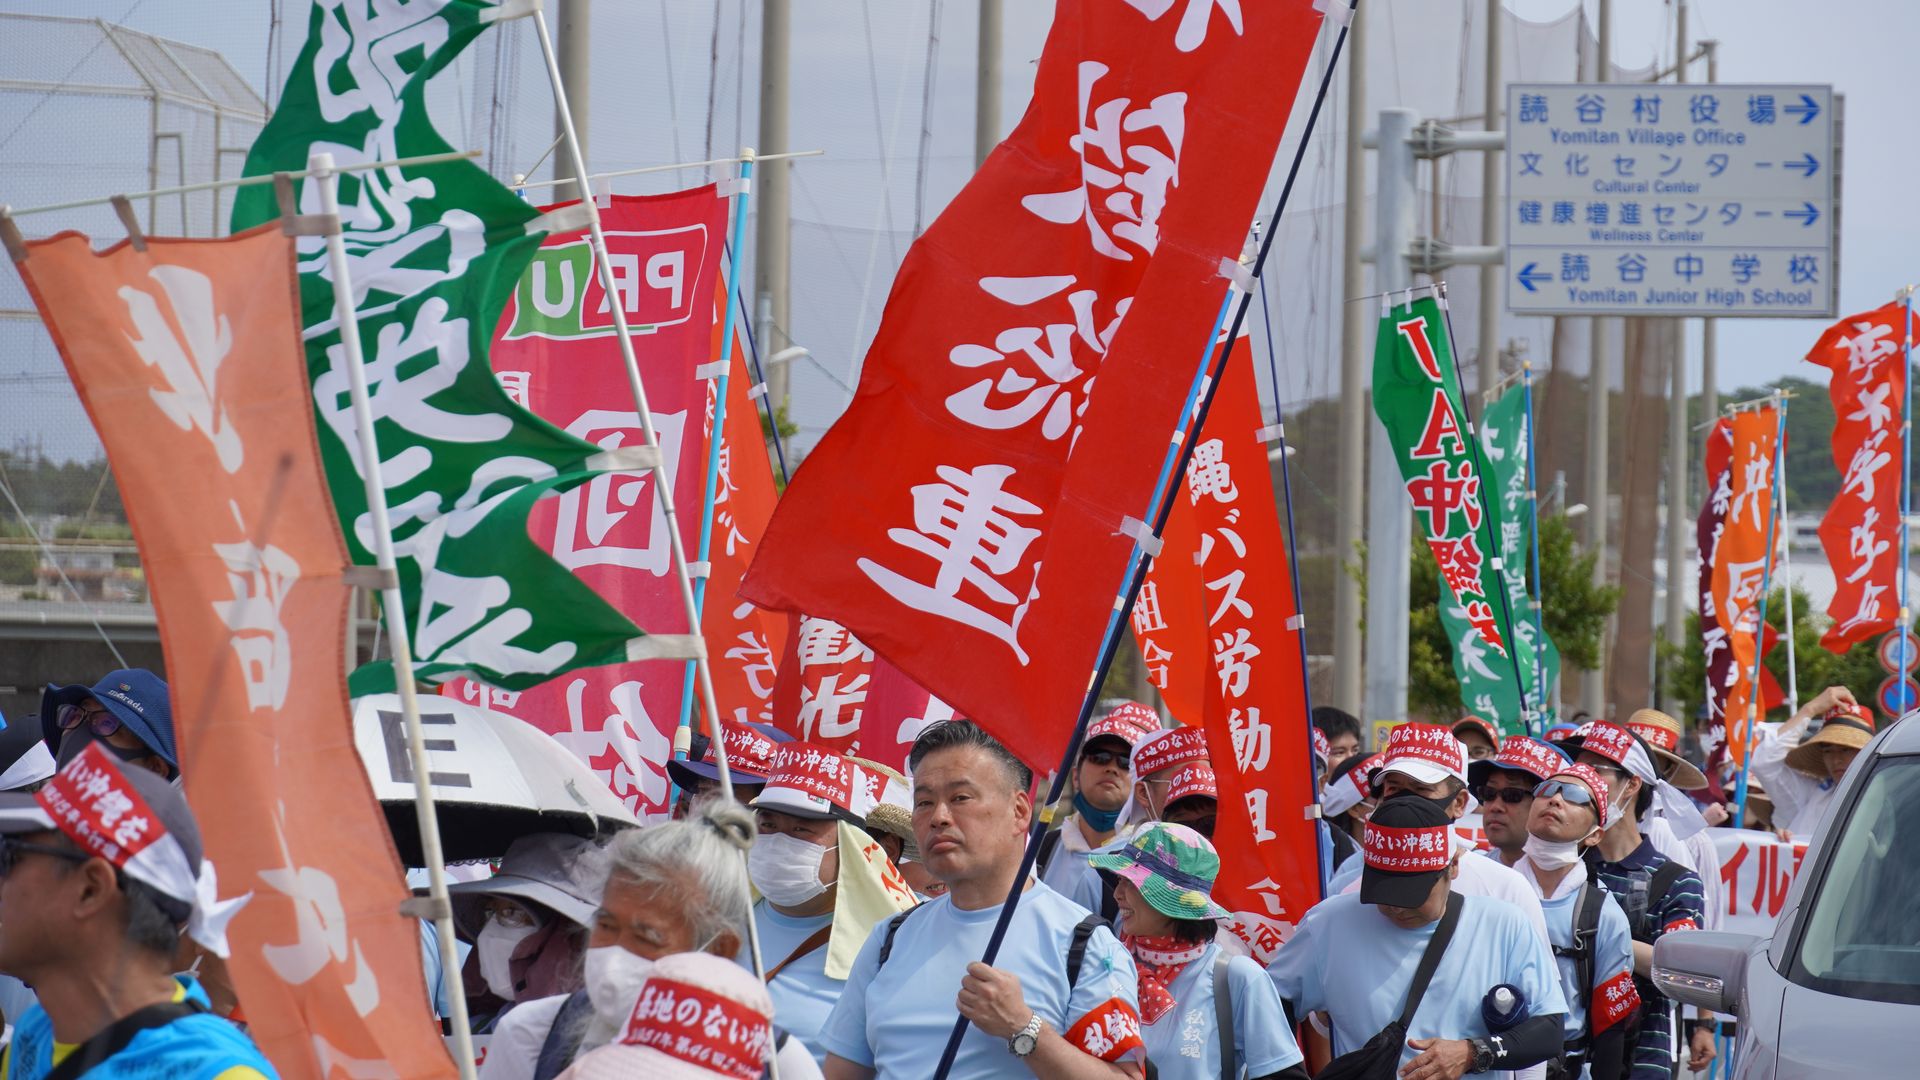 Activists march near Kadena Air Base in Okinawa on May 13. Photo: Sebastian Kjeldtoft.